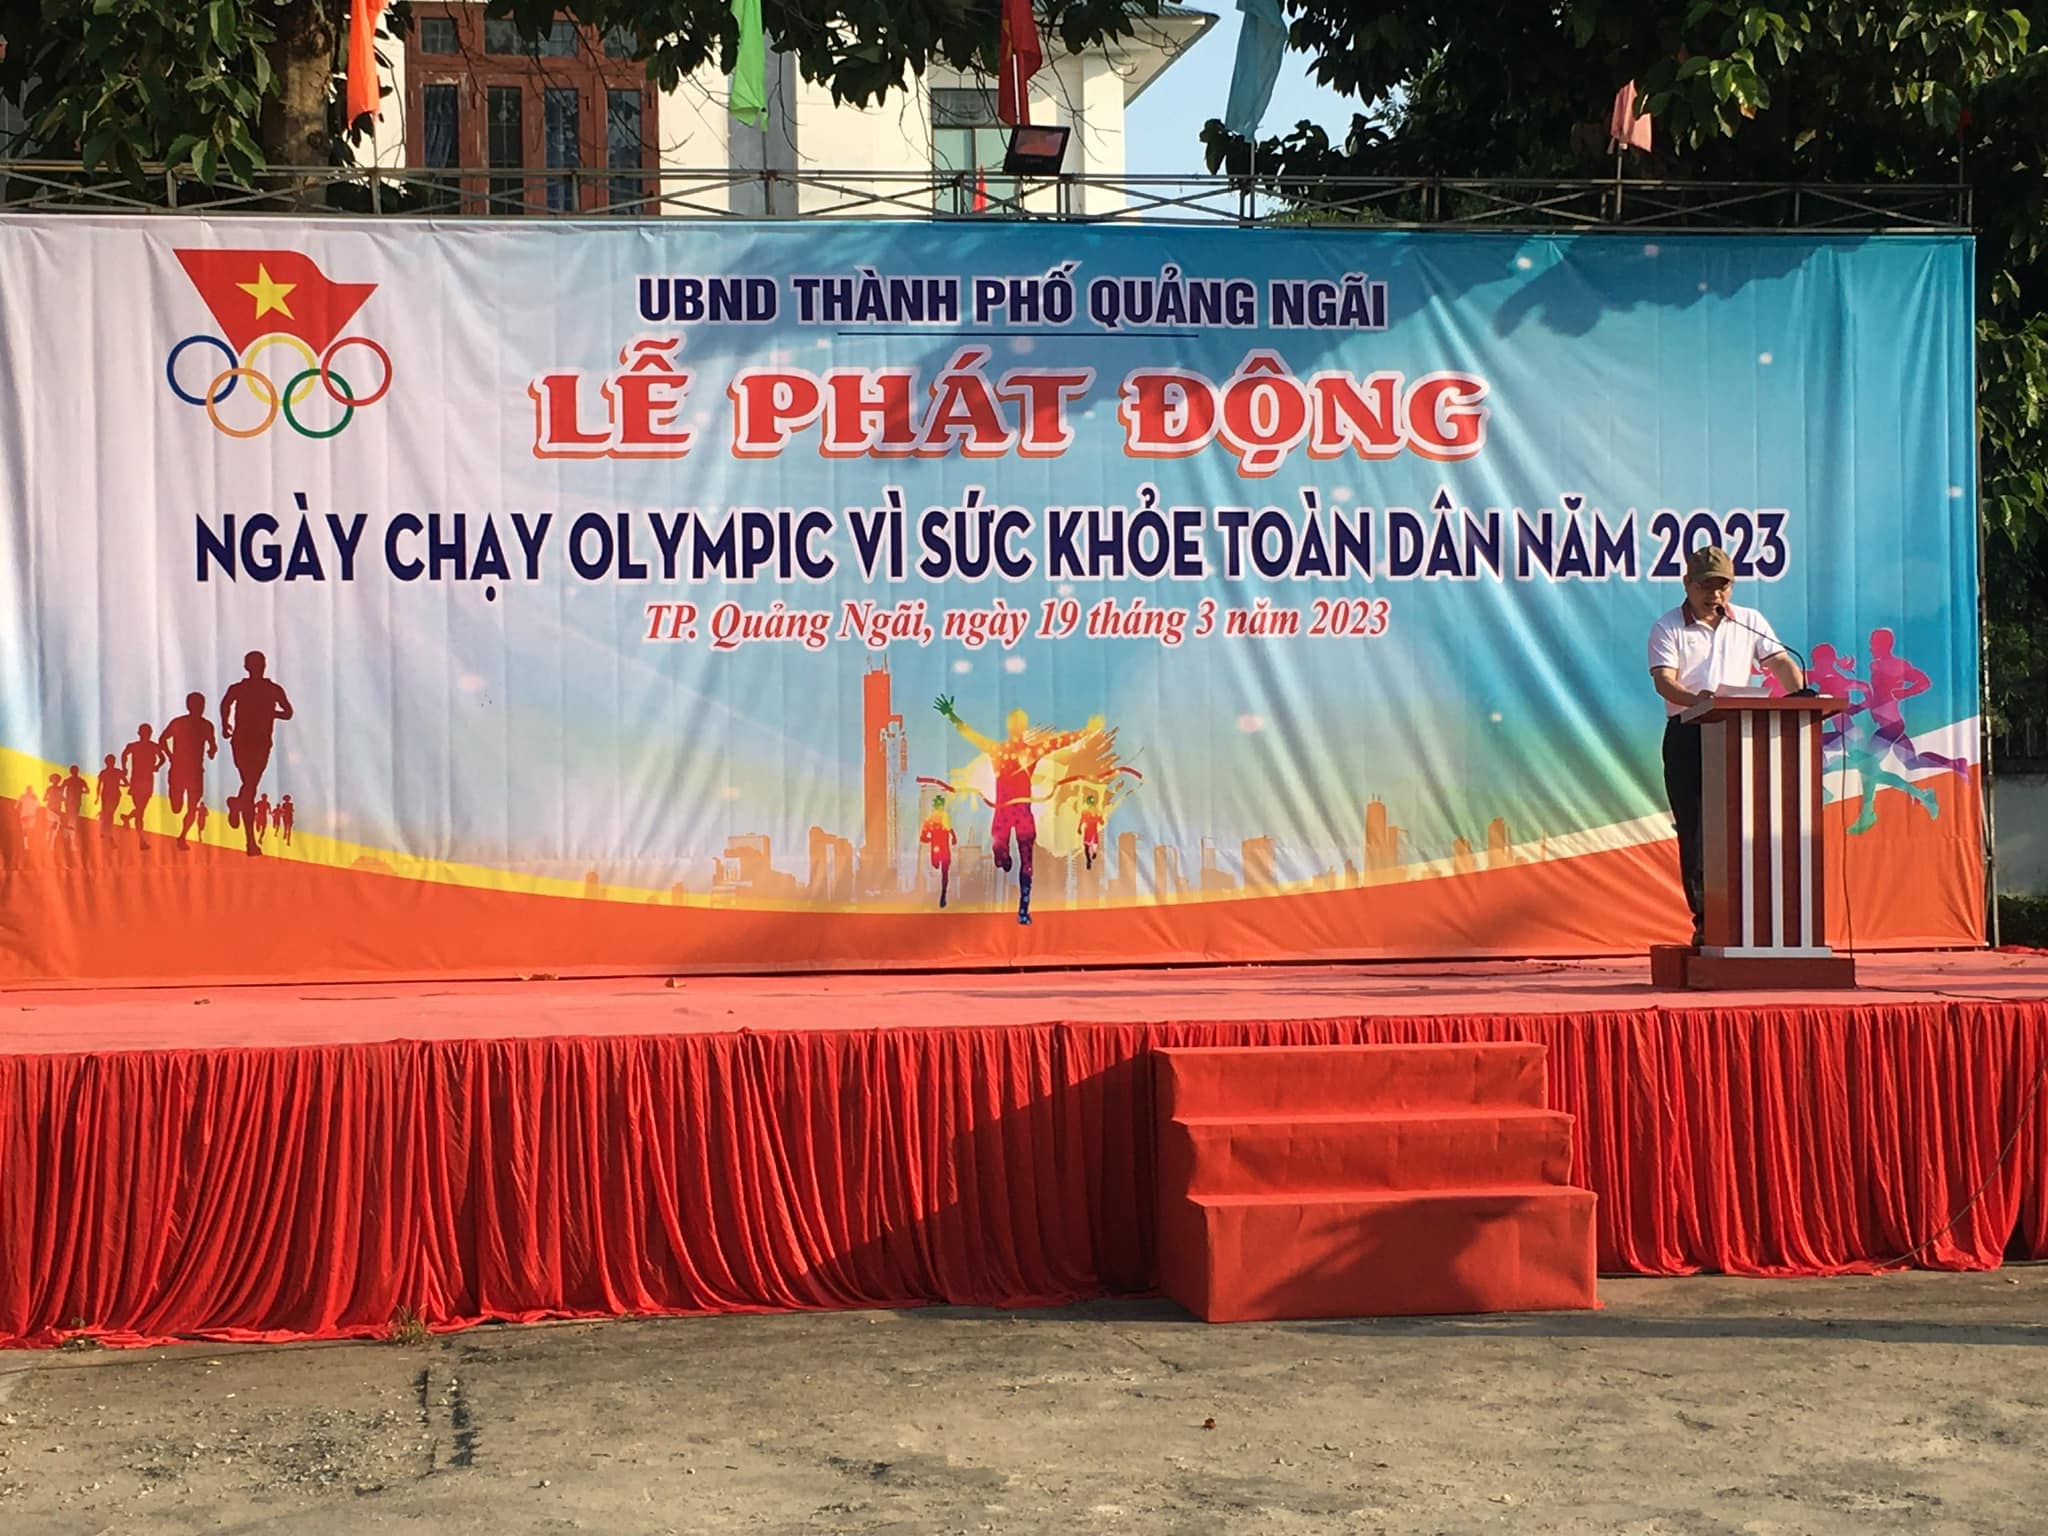 Gần 500 người tham gia ngày chạy Olympic vì sức khỏe toàn dân năm 2023 tại TP Quảng Ngãi